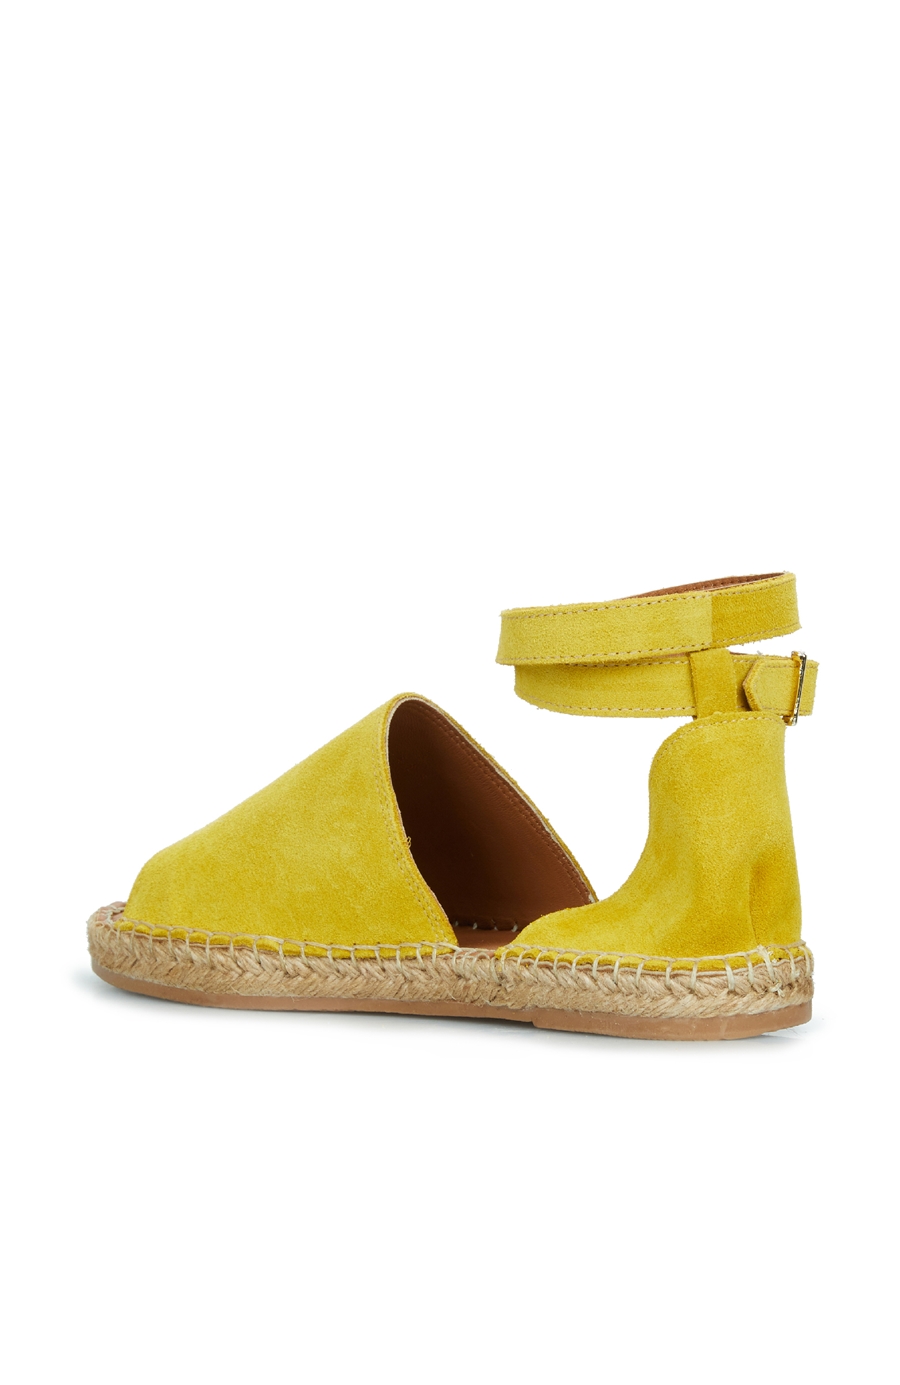 Sarı Hasır Tabanlı Kadın Sandalet